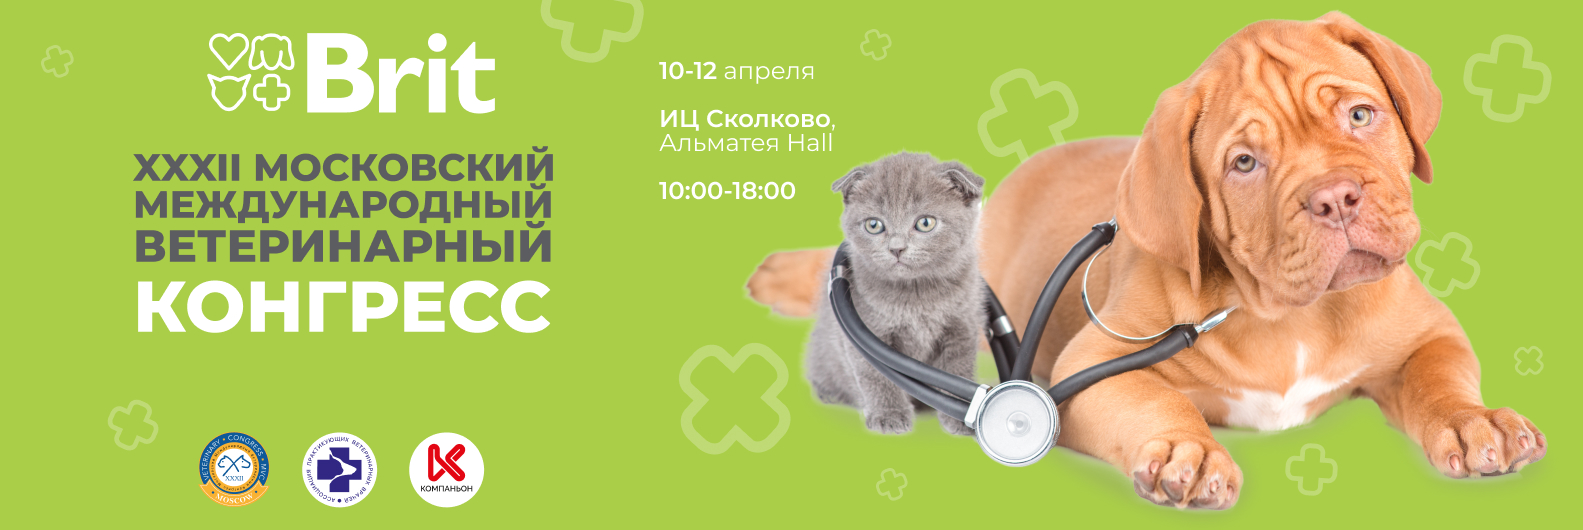 XXXII Московский международный ветеринарный конгресс в Сколково